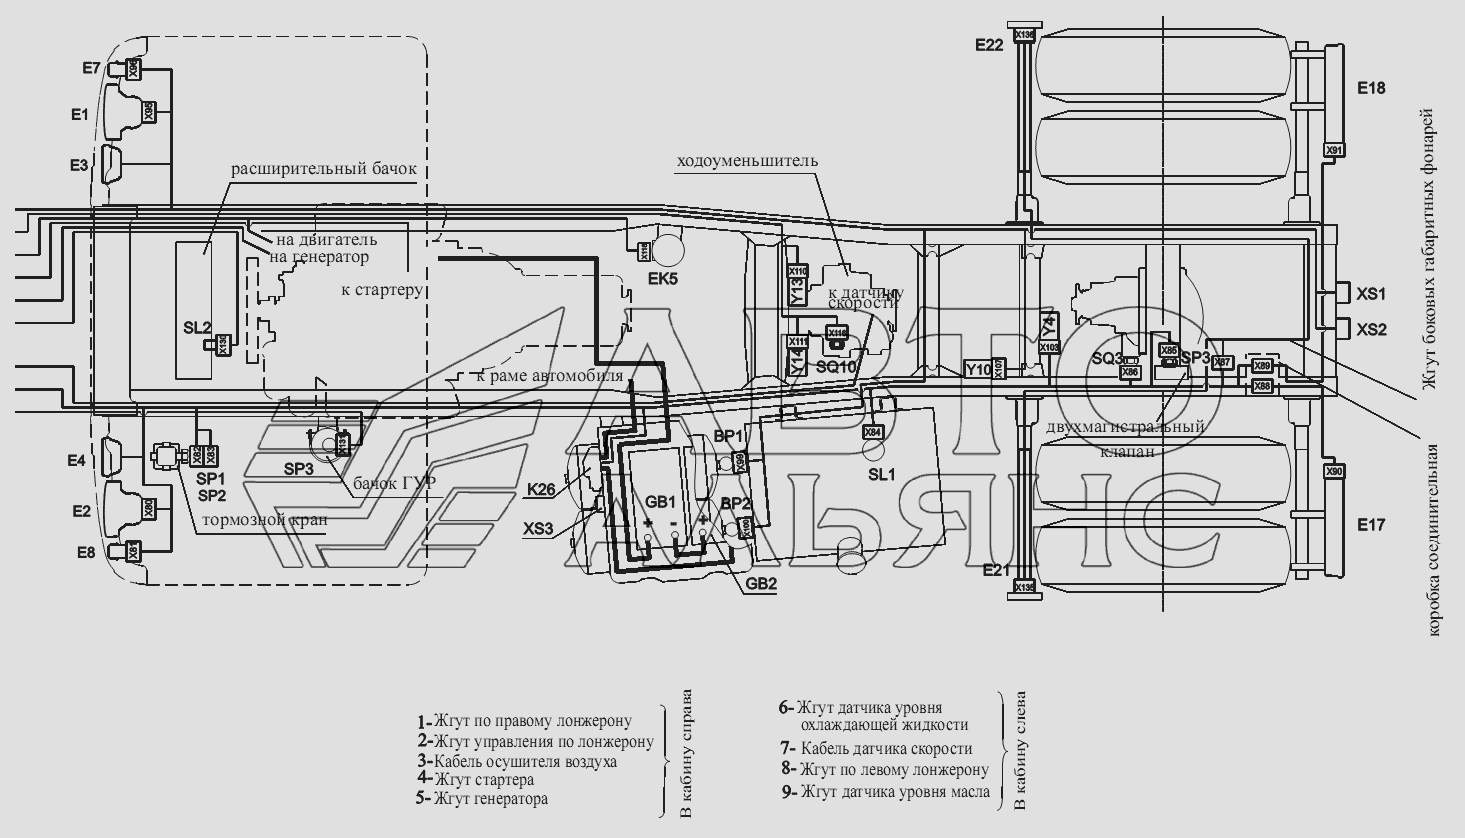 Расположение разъемов и элементов электрооборудования на шасси автомобилей-самосвалов c трехсторонней разгрузкой и ходоуменьшителем МАЗ-555102, 5551А2